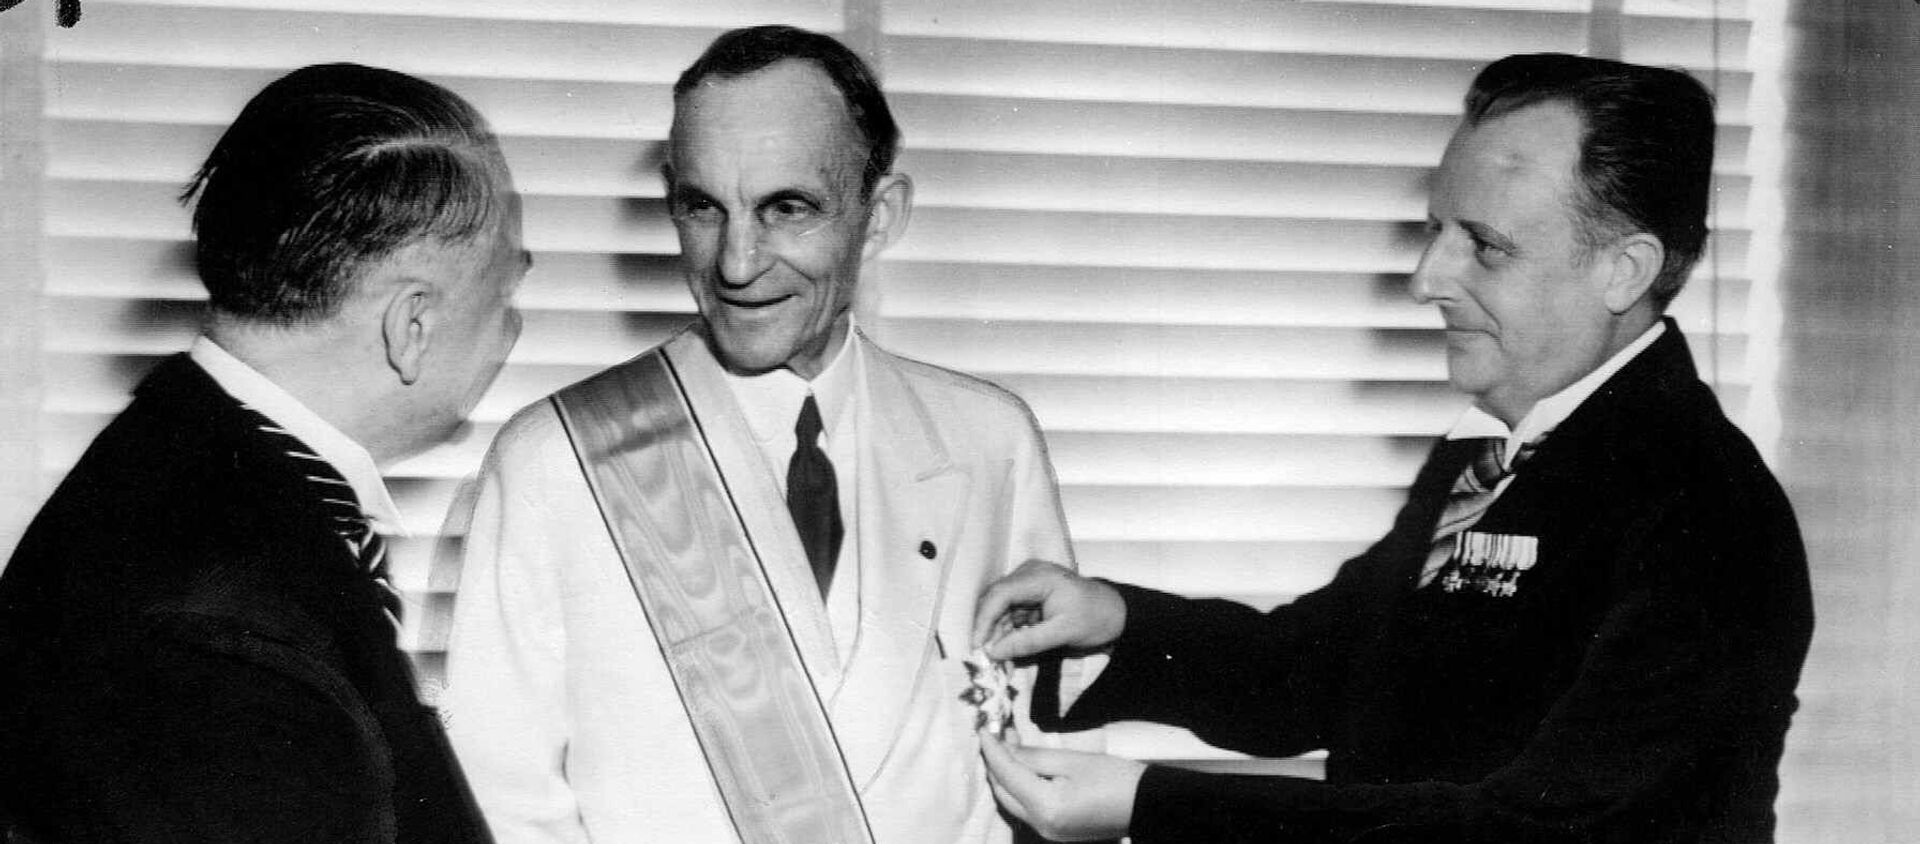 Henry Ford recibe la Gran Cruz del Águila Alemana - Sputnik Mundo, 1920, 21.05.2020